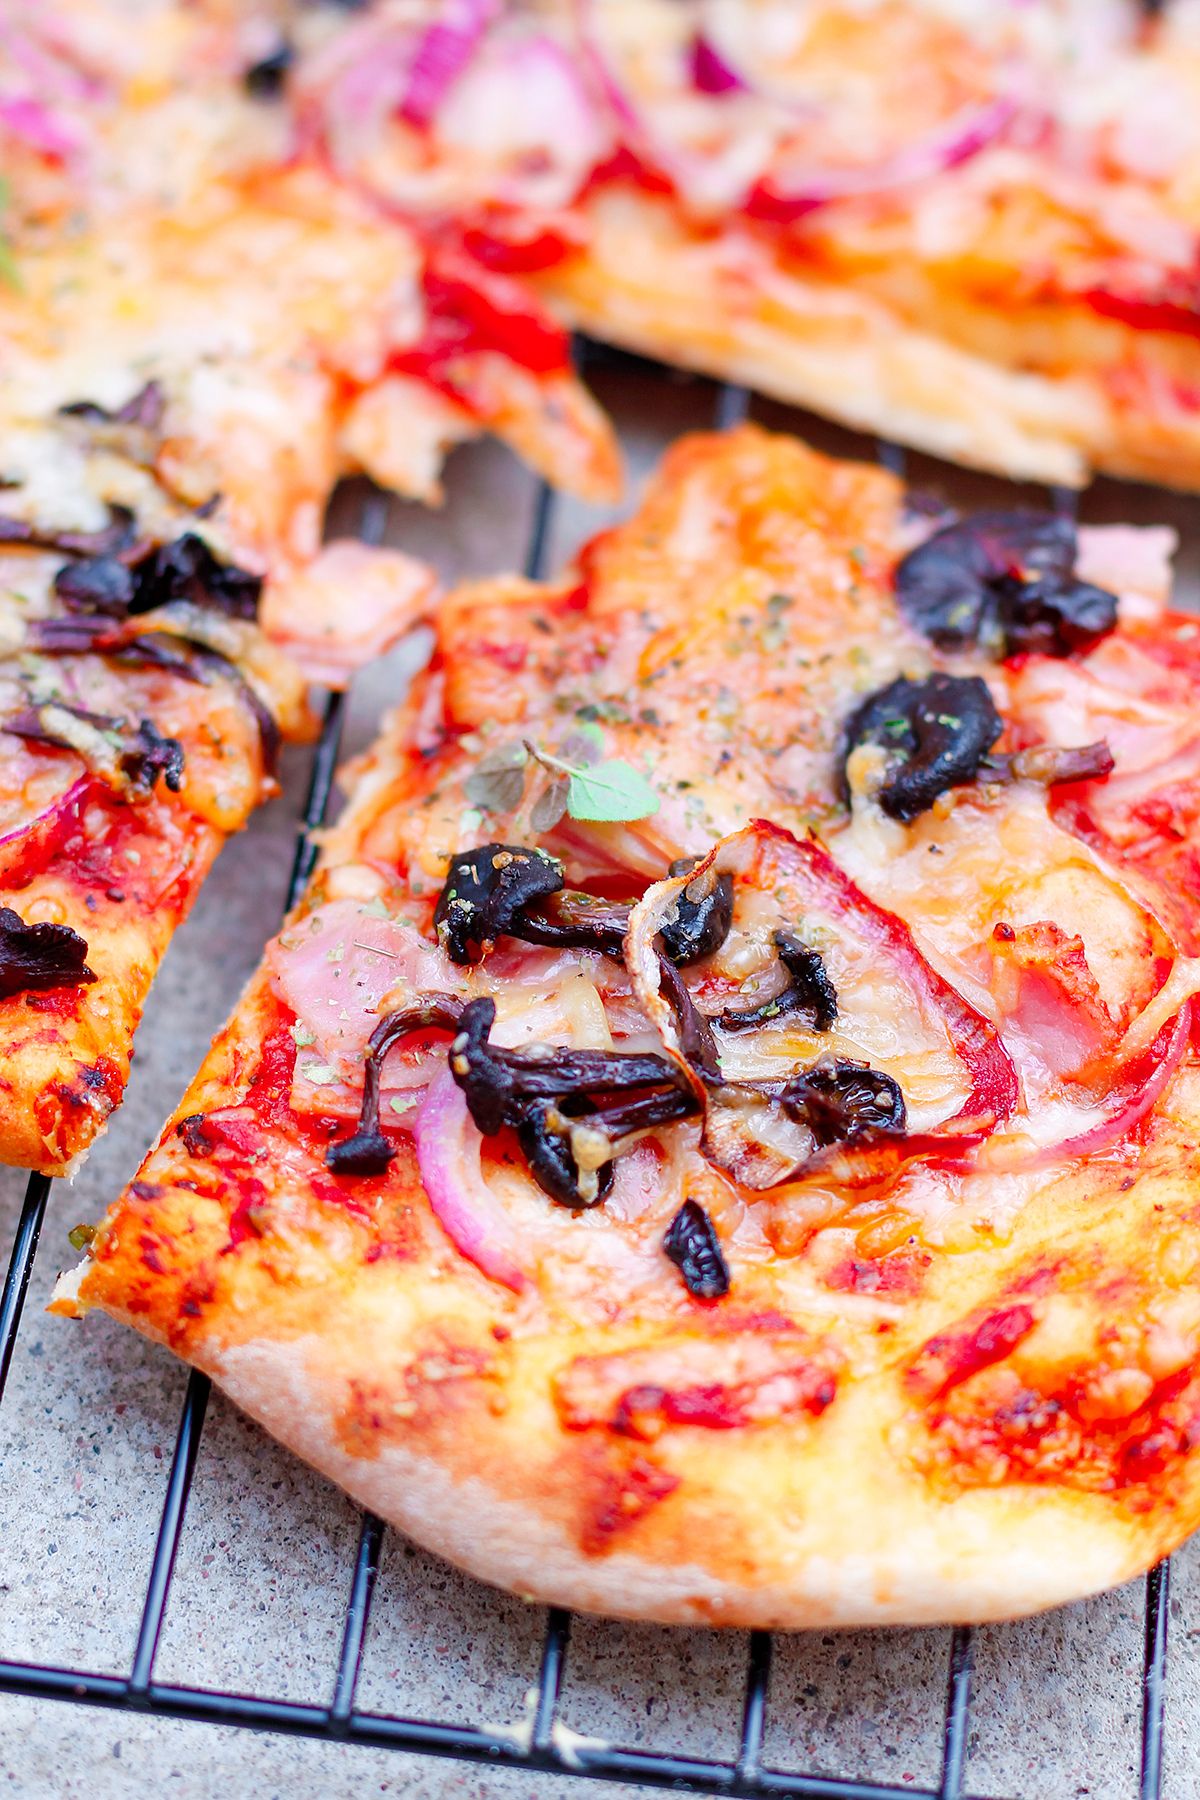 Domowa pizza z leśnych grzybów jak pieprzników trąbkowatych i kurek na blogu codojedzenia